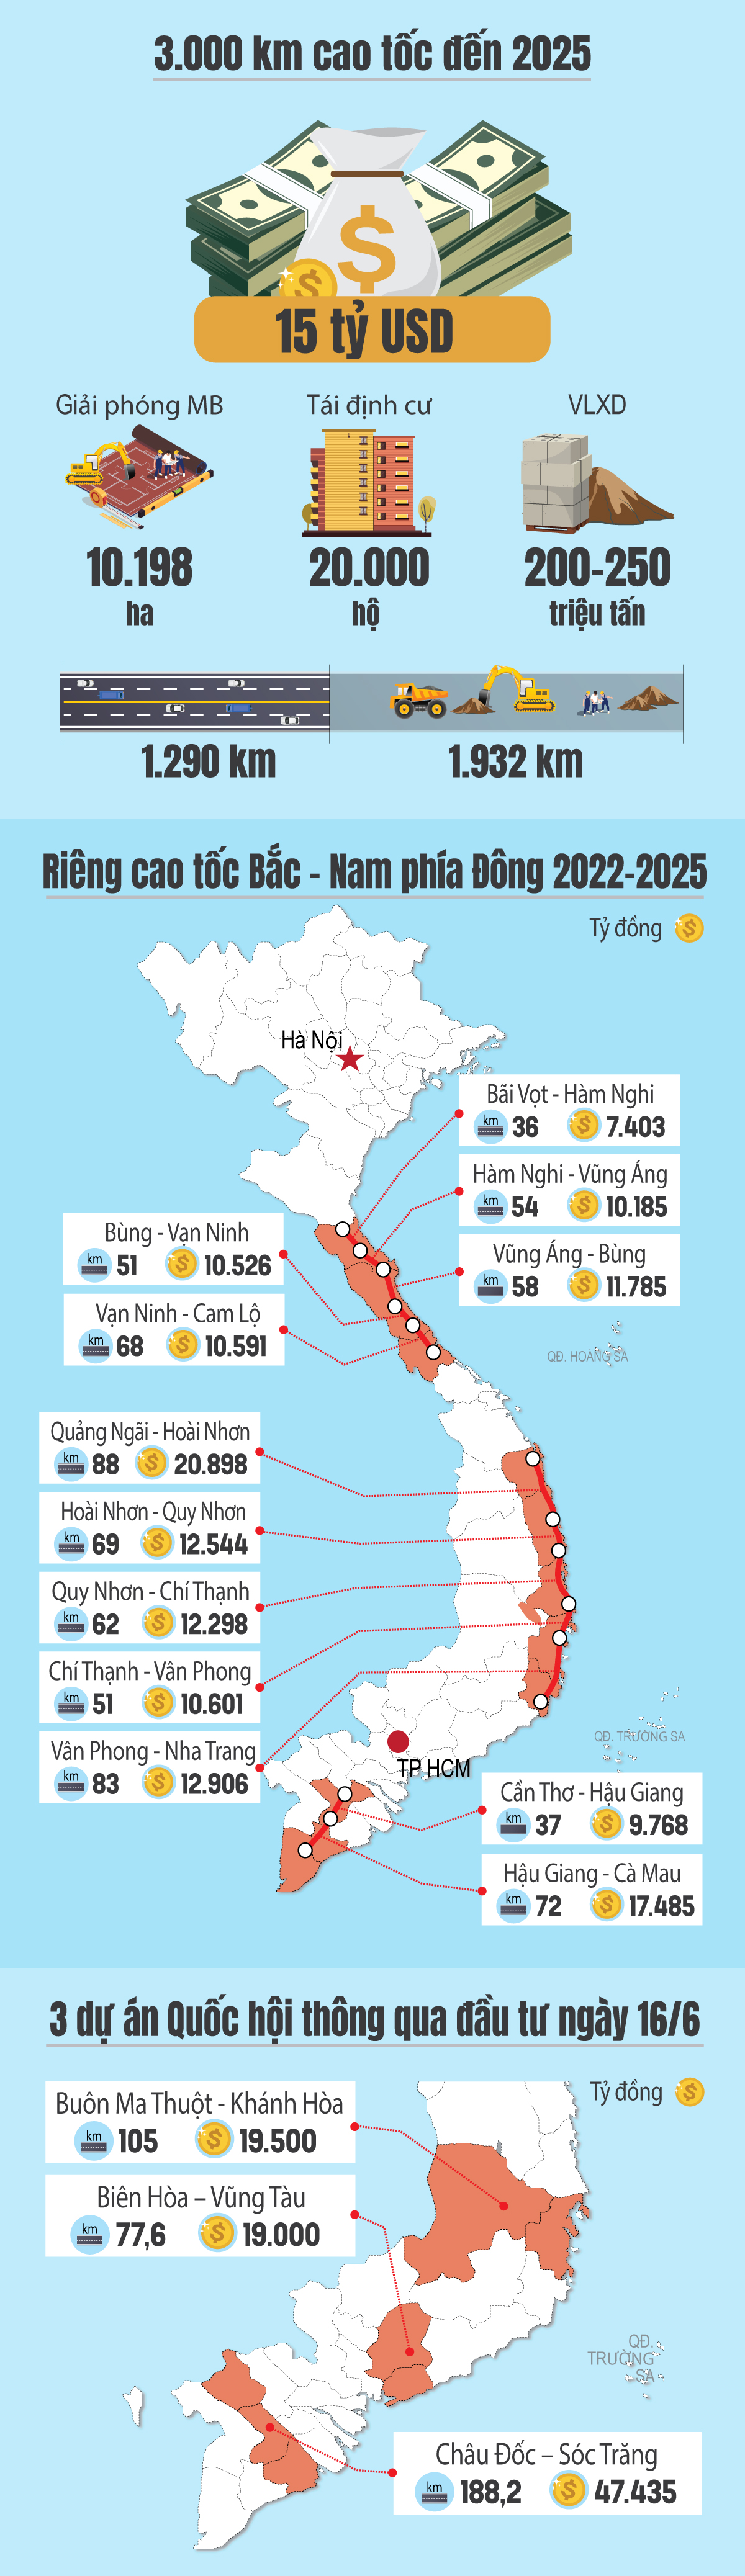 15 tuyến cao tốc sắp triển khai trên cả nước giúp nâng tầm bộ mặt giao thông Việt Nam - Ảnh 1.